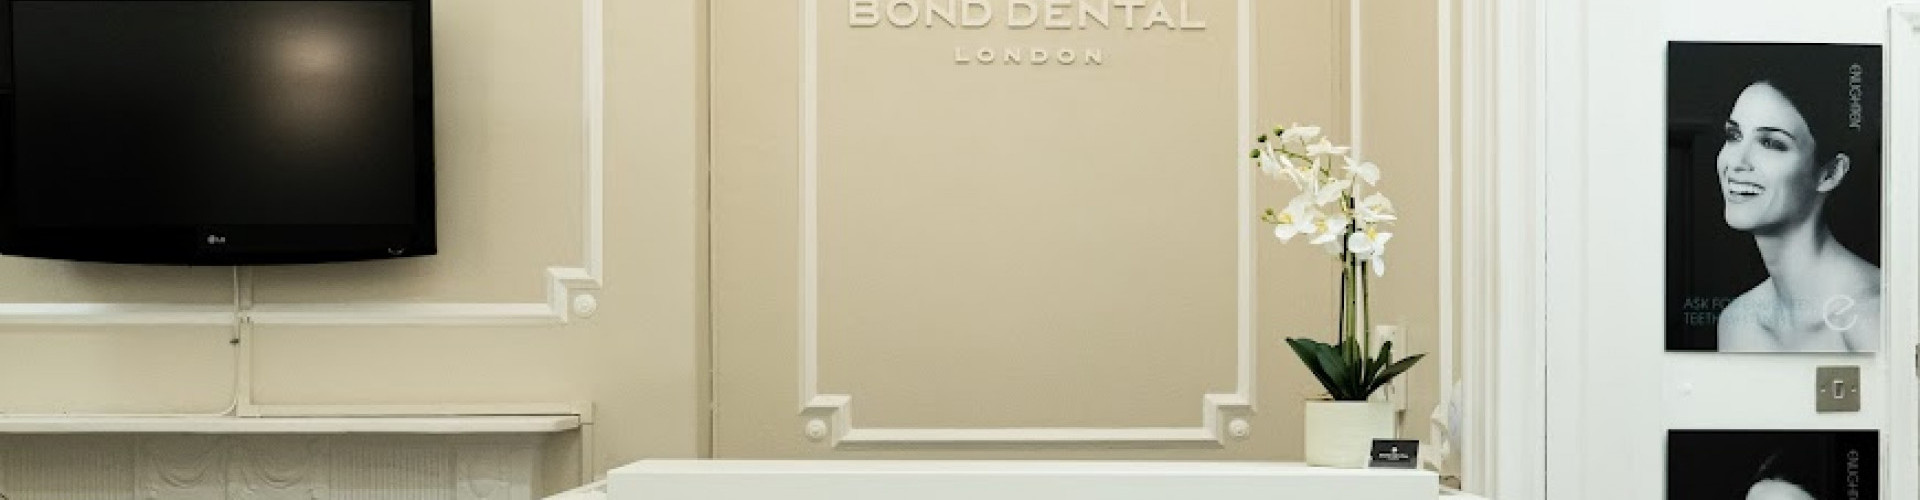 Bond Dental London Slider 3